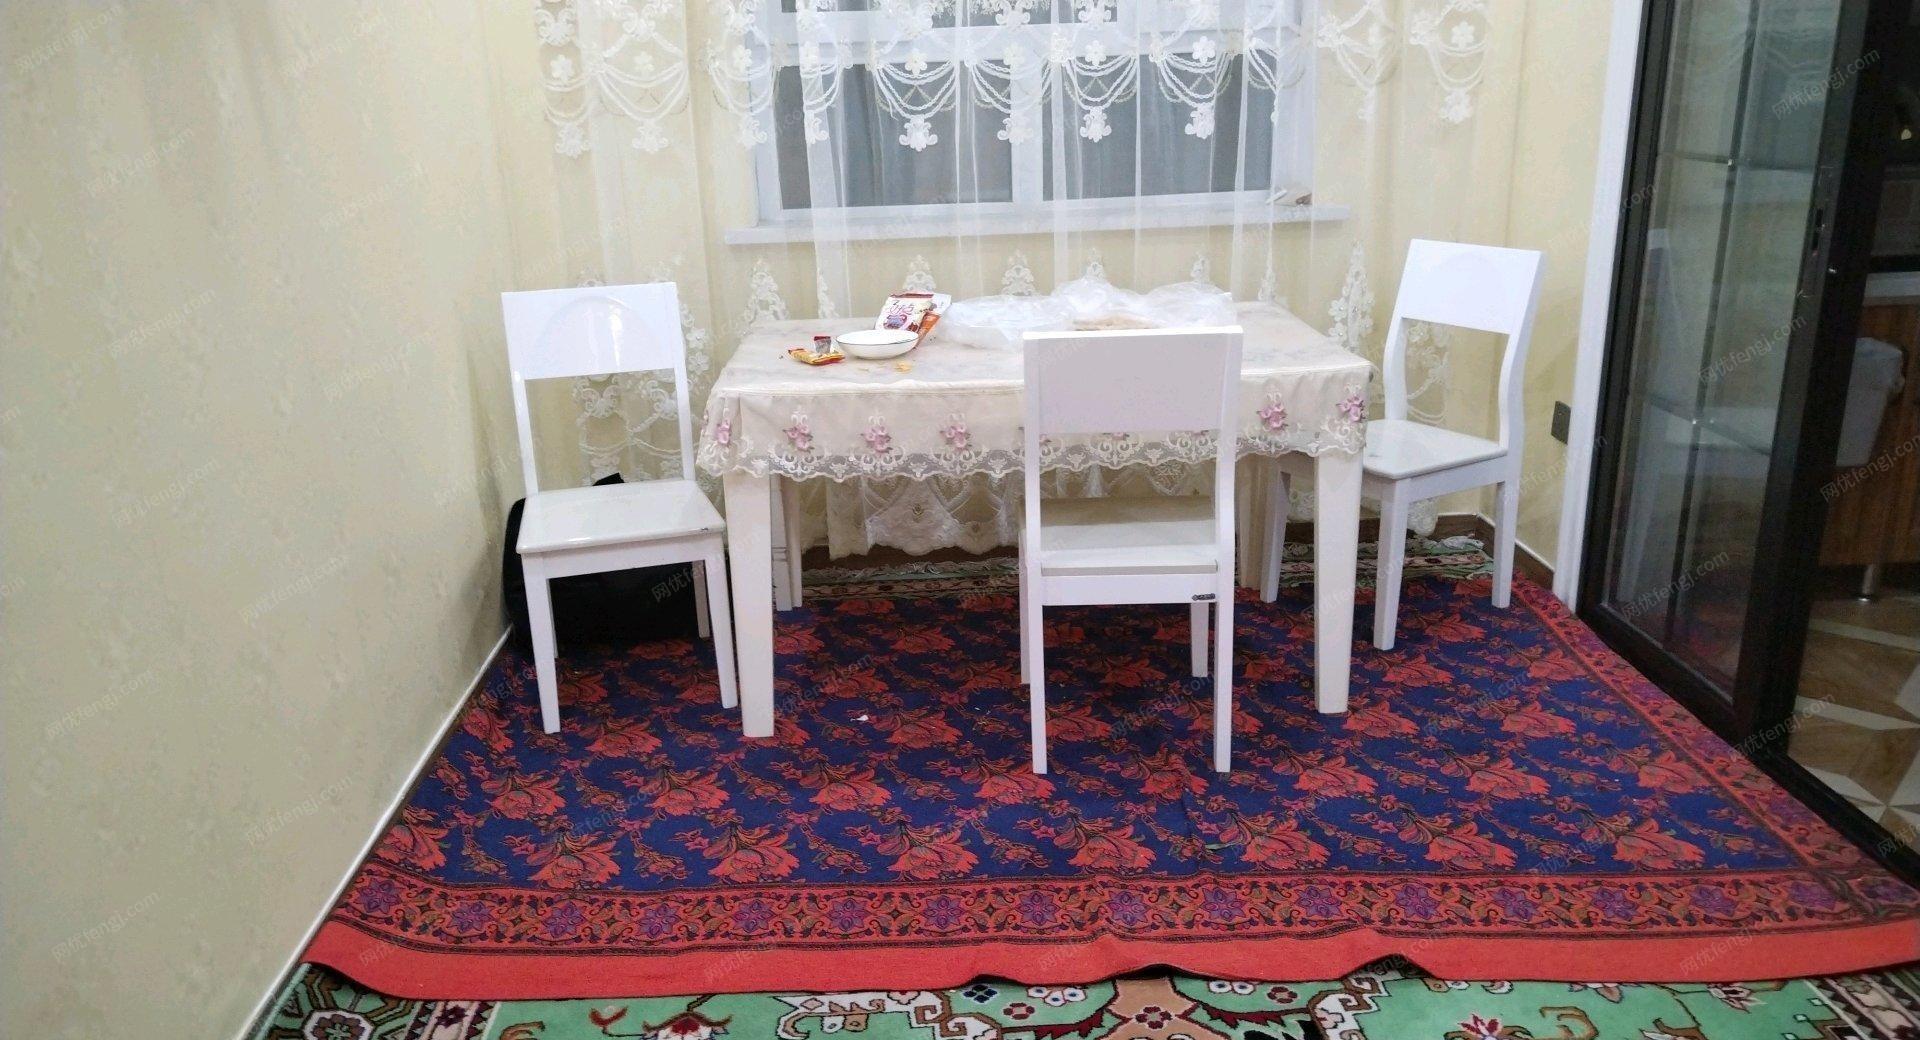 新疆博尔塔拉蒙古自治州六把椅子 实木出售